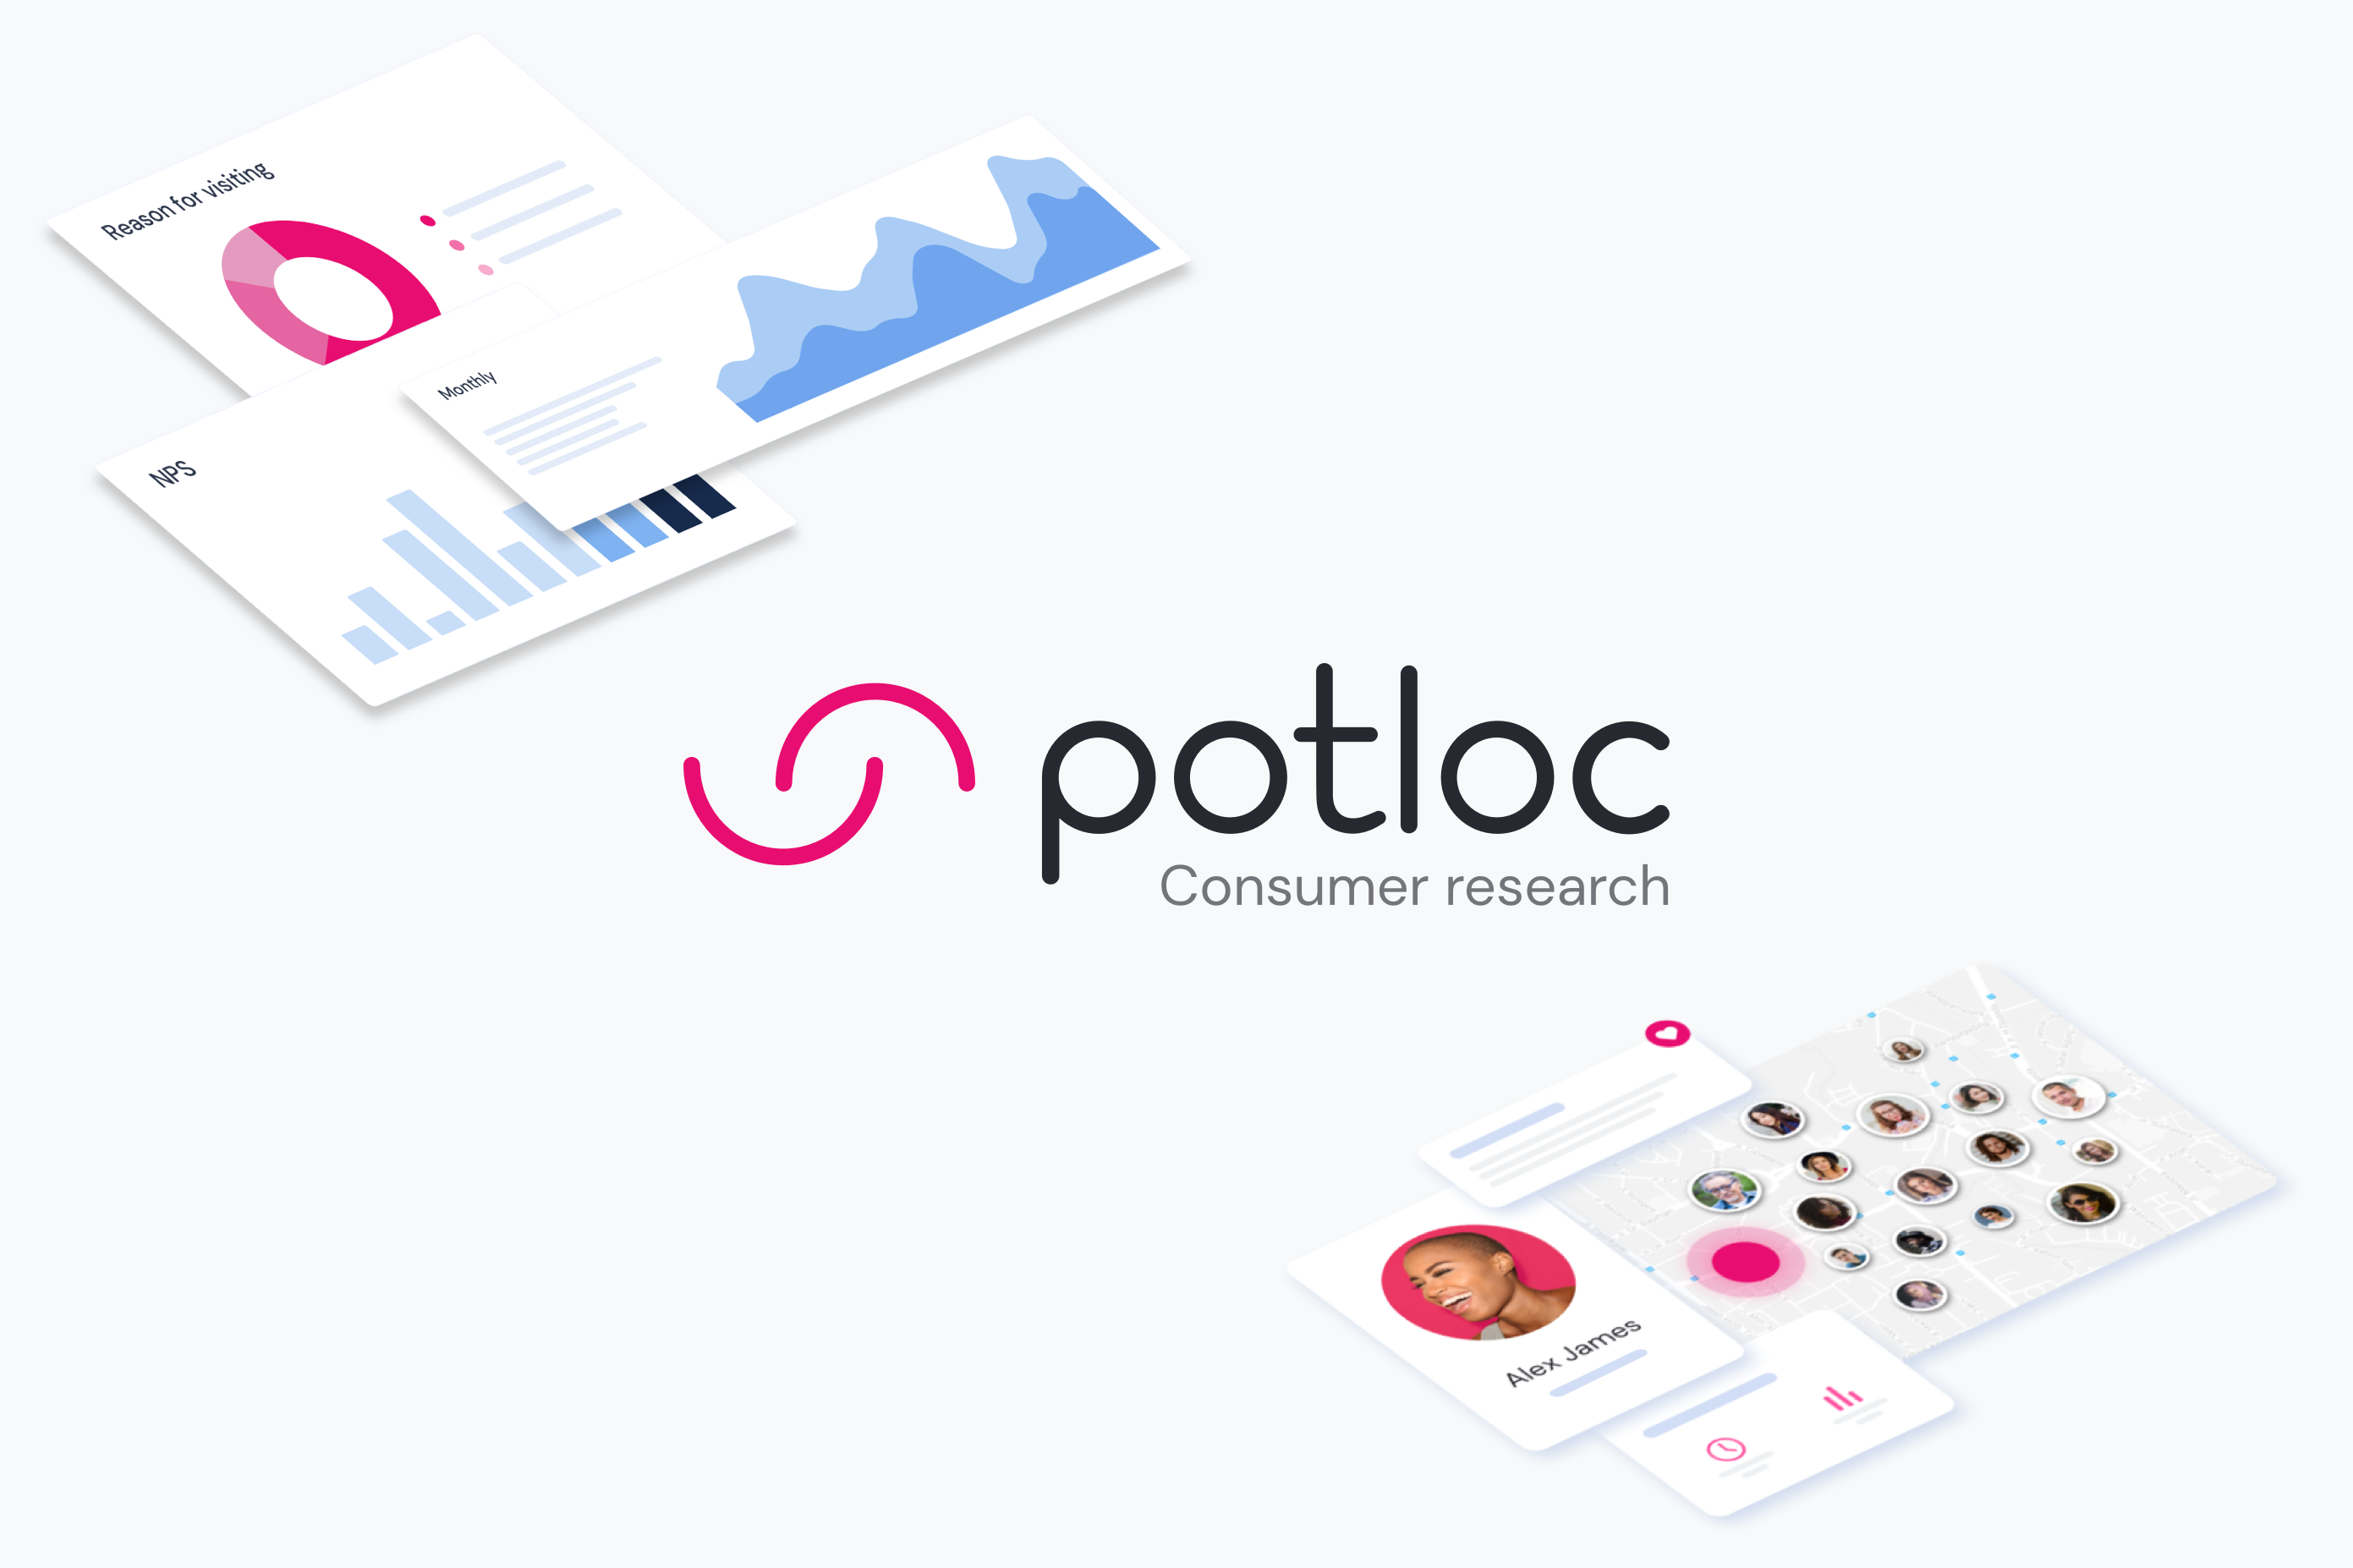 (c) Potloc.com